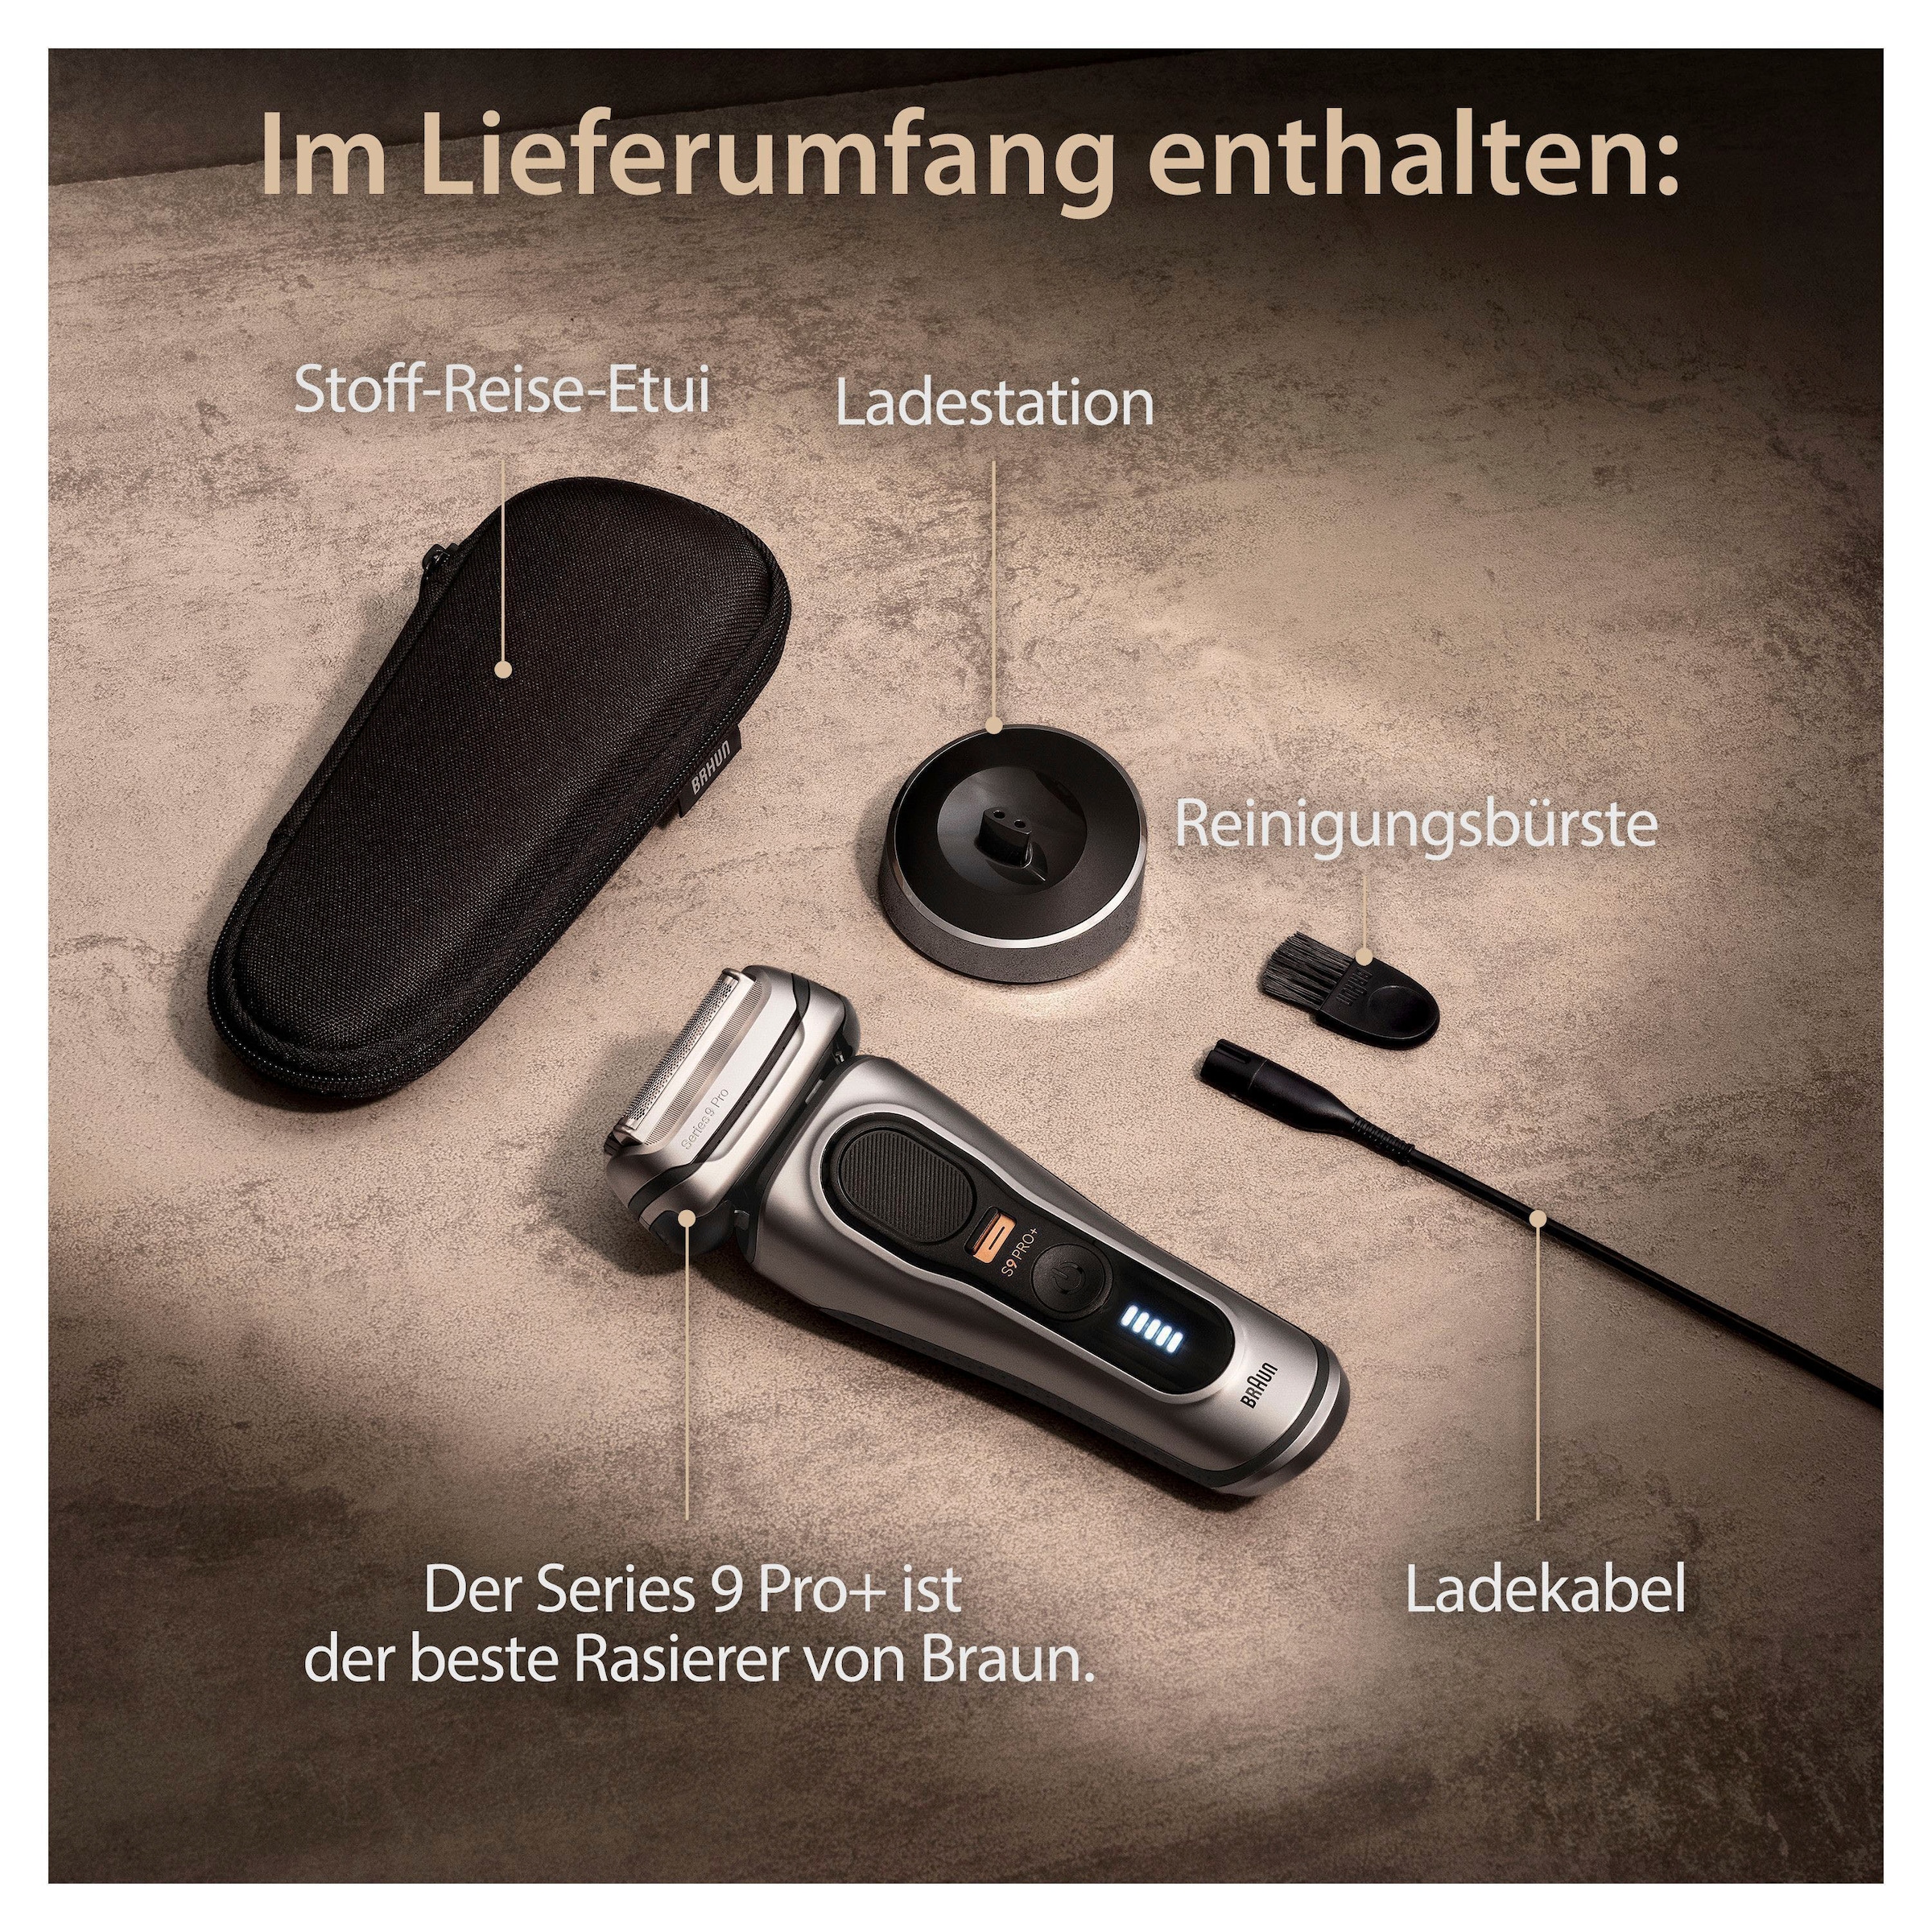 Braun Series 9 Pro Premium Rasierer Herren mit 4+1 Scherkopf,  Elektrorasierer & ProLift Trimmer, PowerCase, 5-in-1 Reinigungsstation, 60  Min.